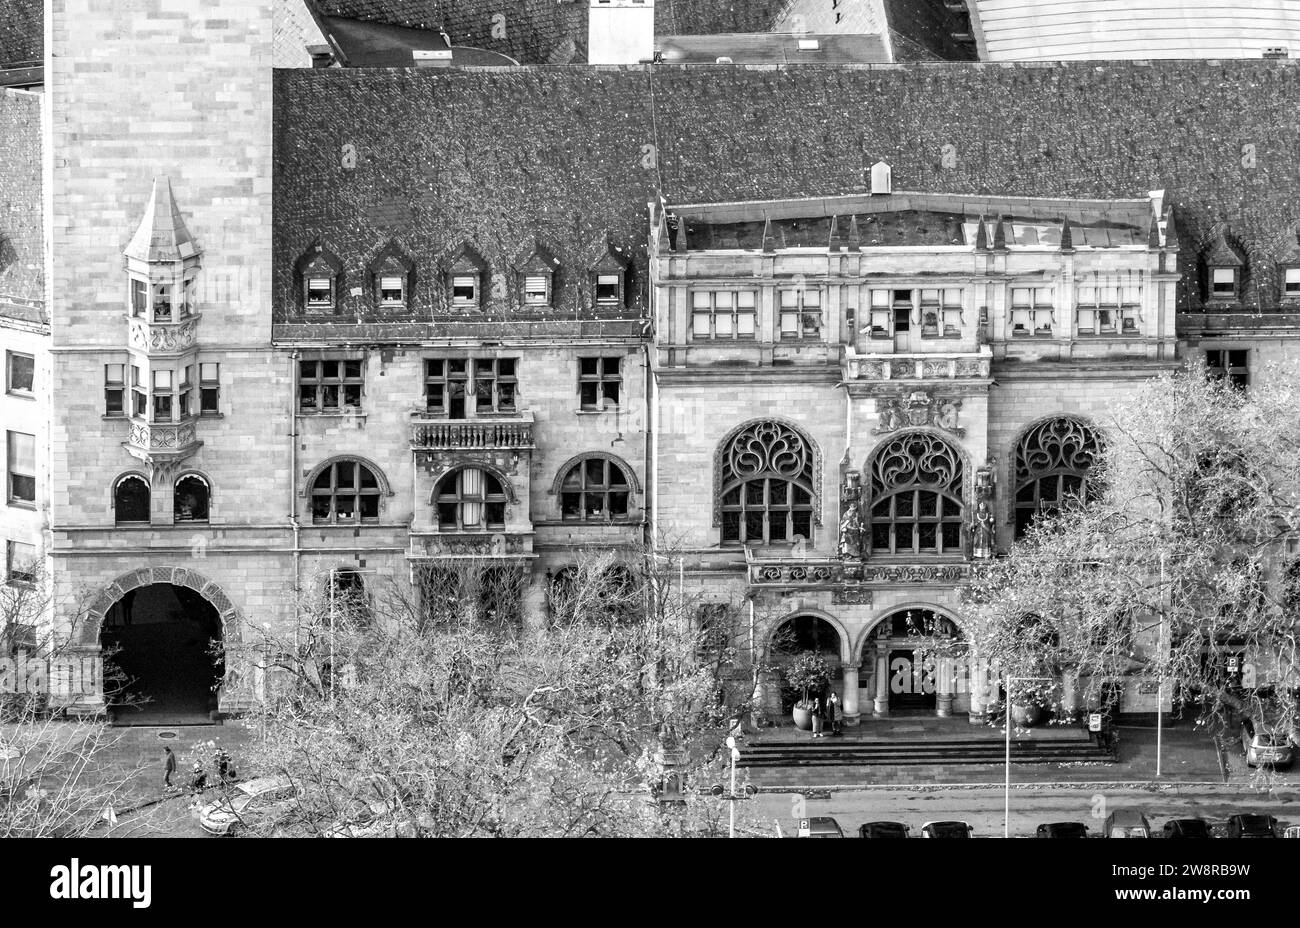 Luftaufnahme, historische Rathausfassade, umgeben von herbstlichen Laubbäumen, Altstadt, Duisburg, Ruhrgebiet, Nordrhein-Westfalen, Deutschland Stockfoto